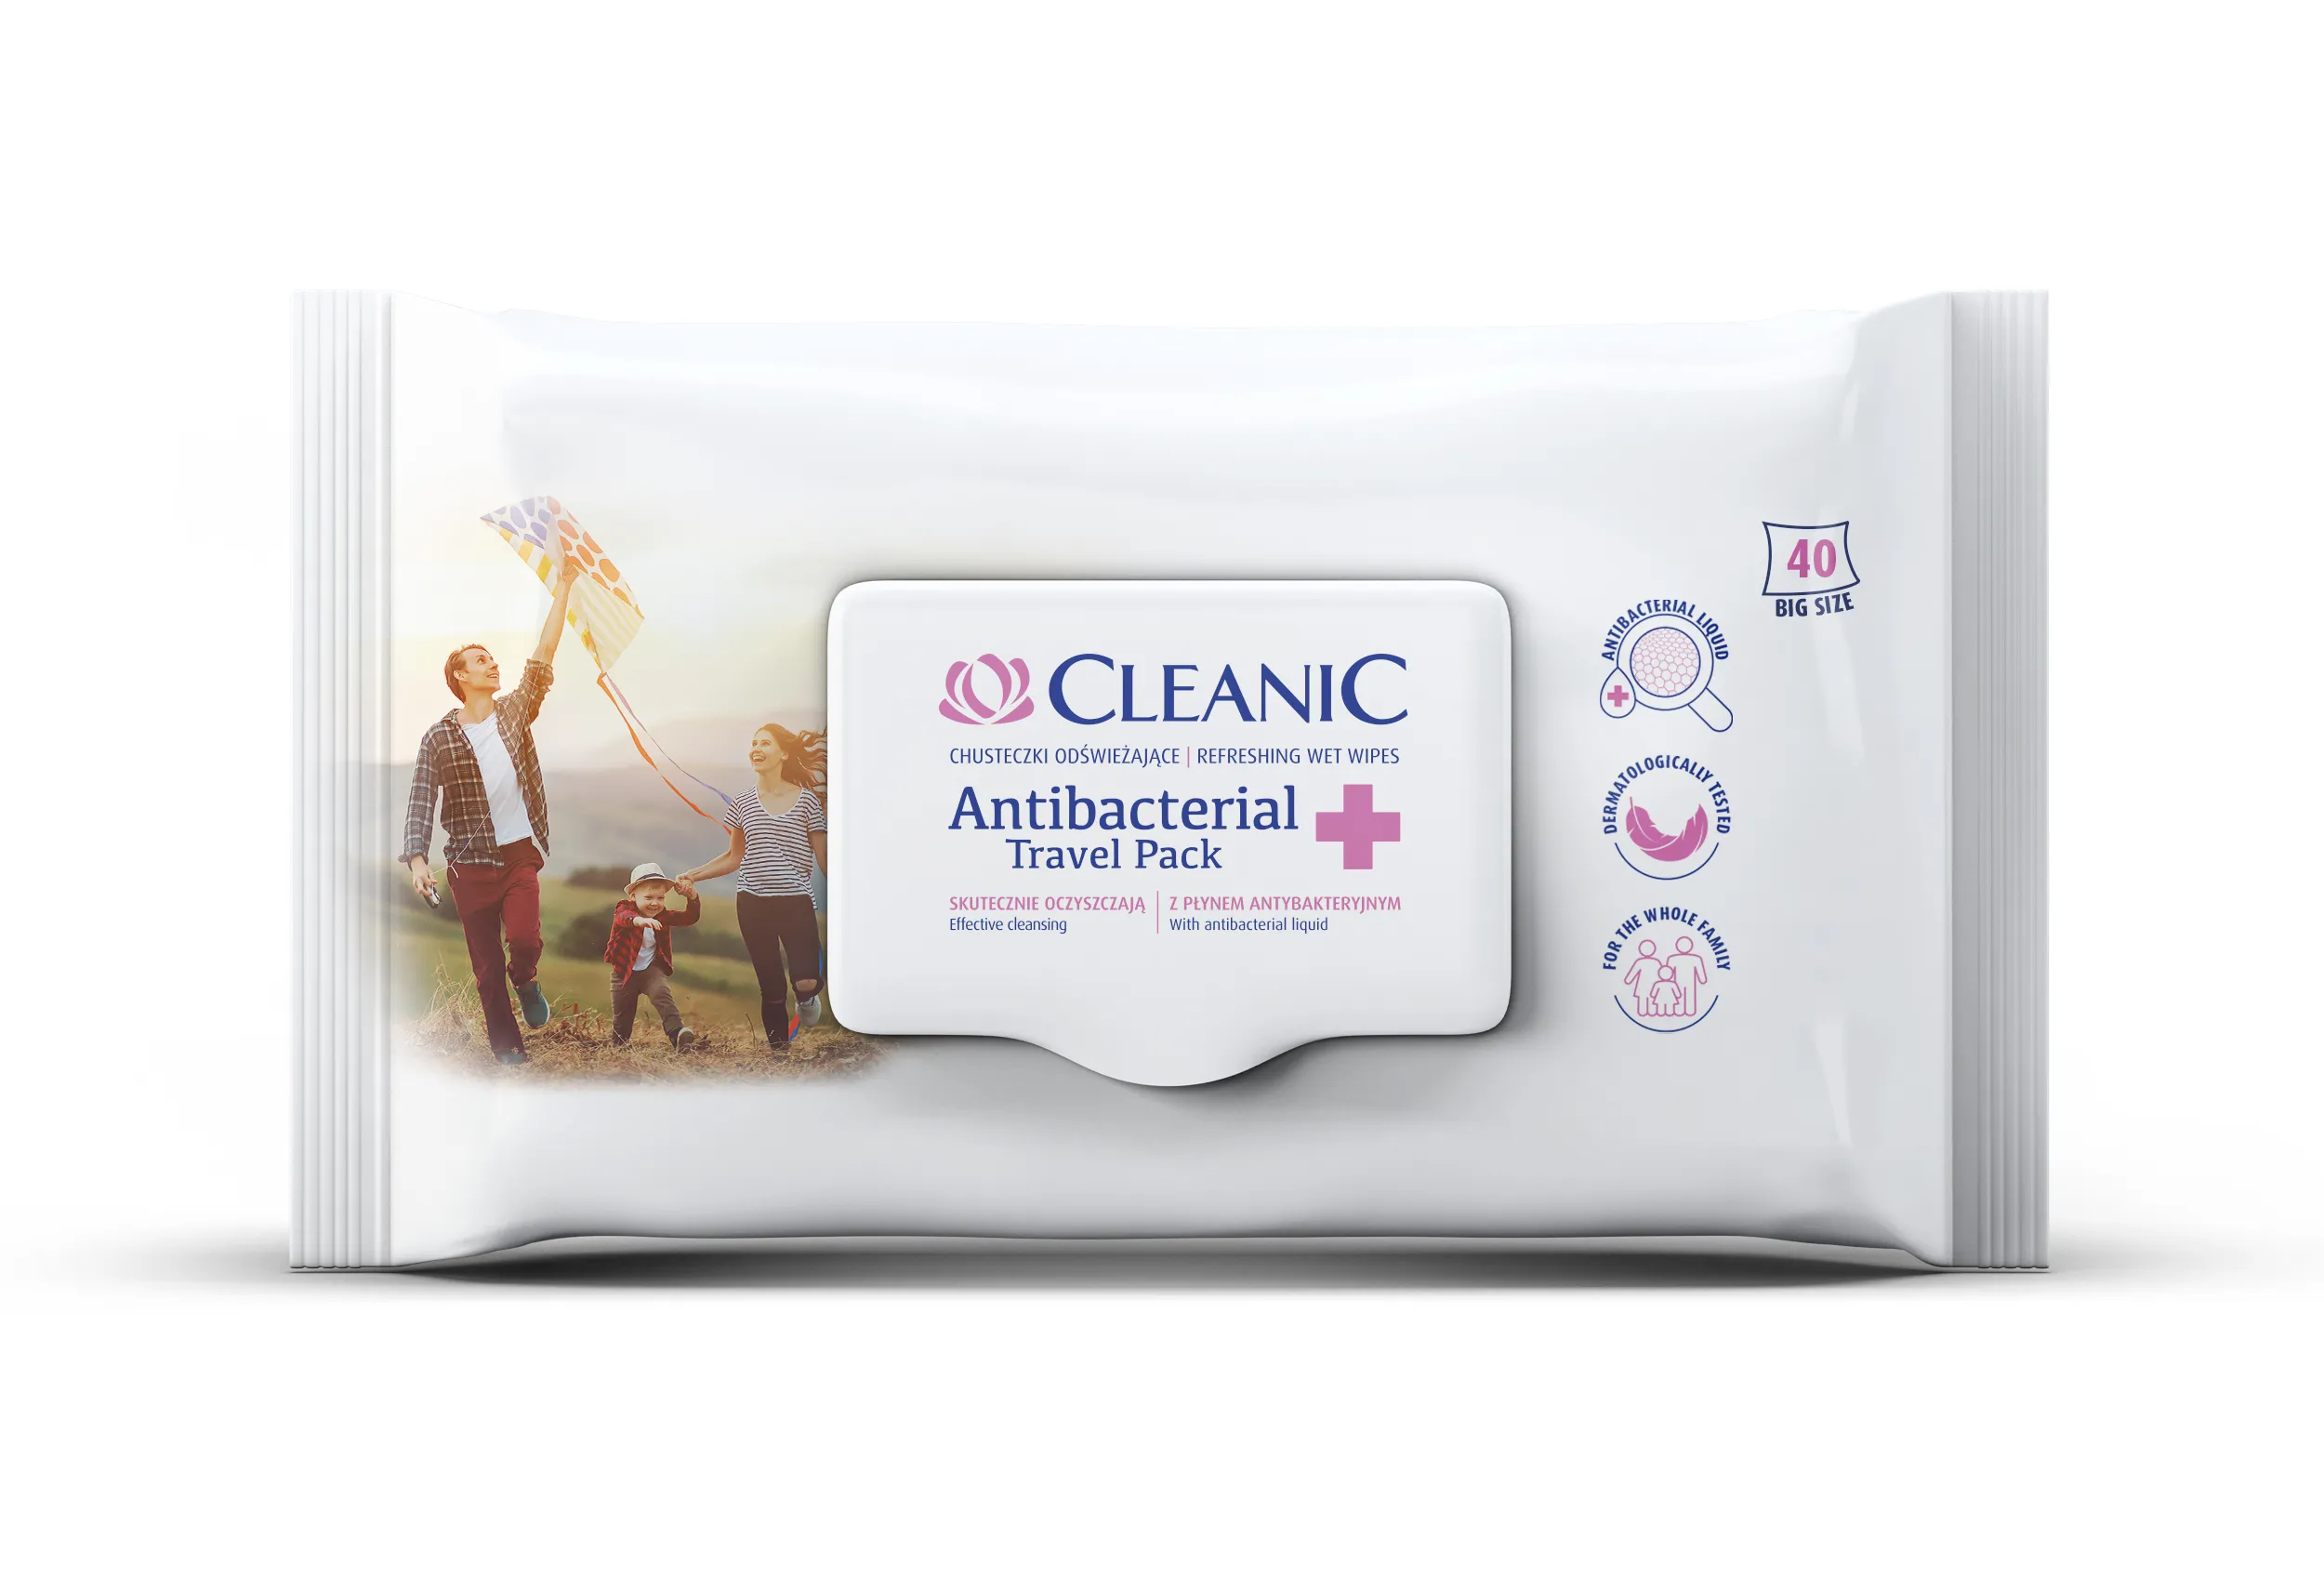 Cleanic Antibacterial Travel Pack, chusteczki odświeżające, 40 sztuk